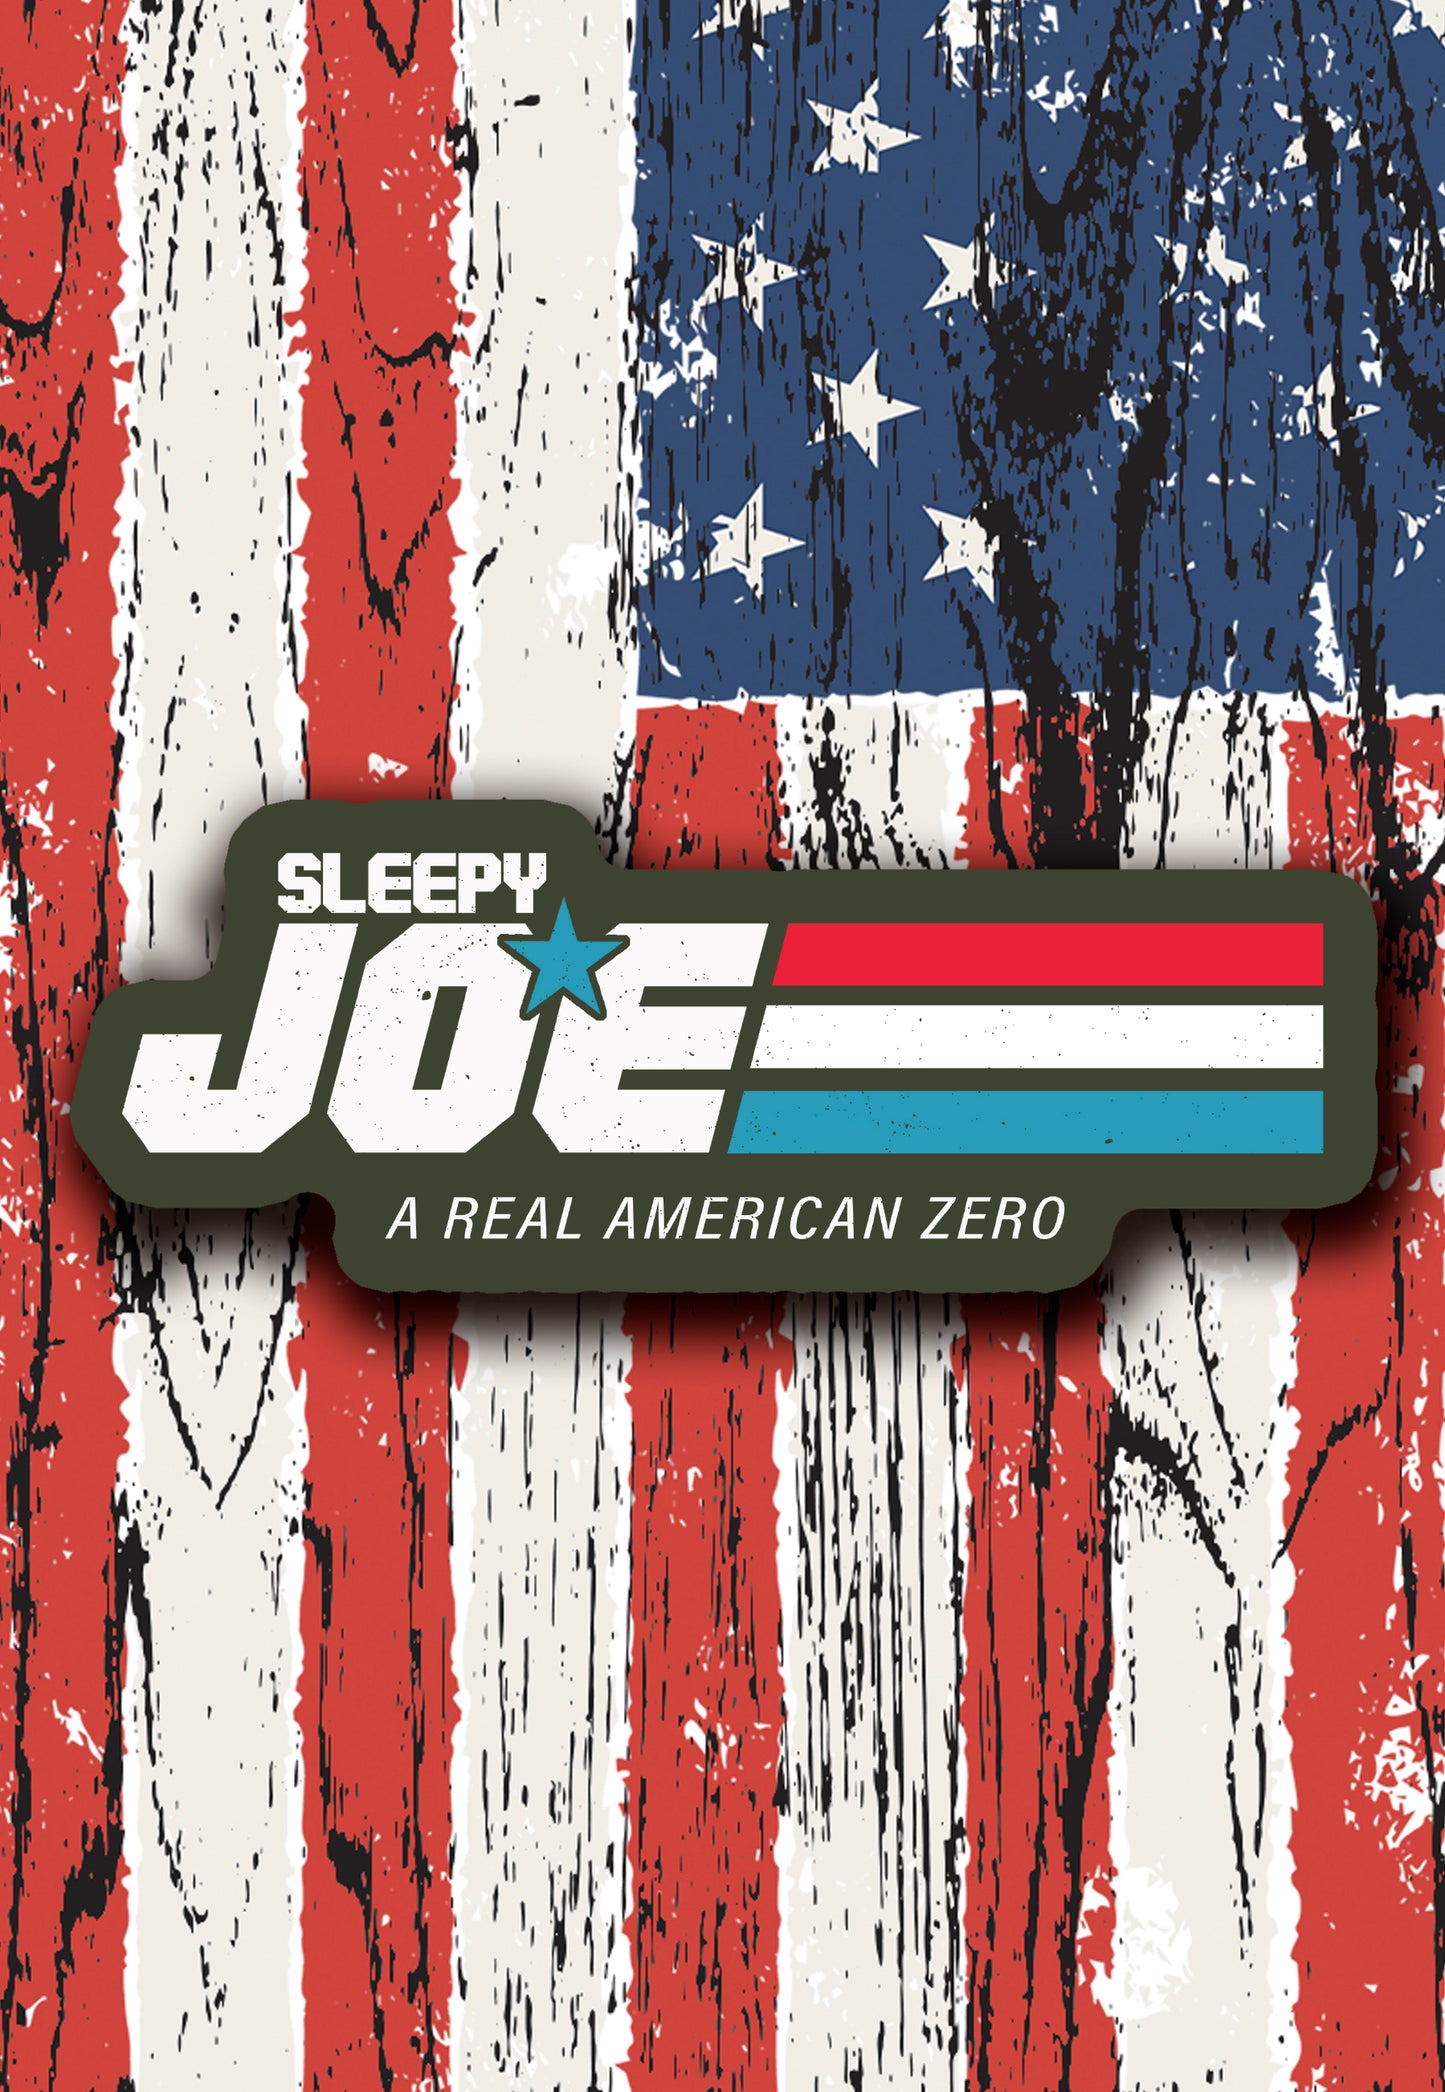 Funny sleepy Joe sticker anti Joe Biden merch